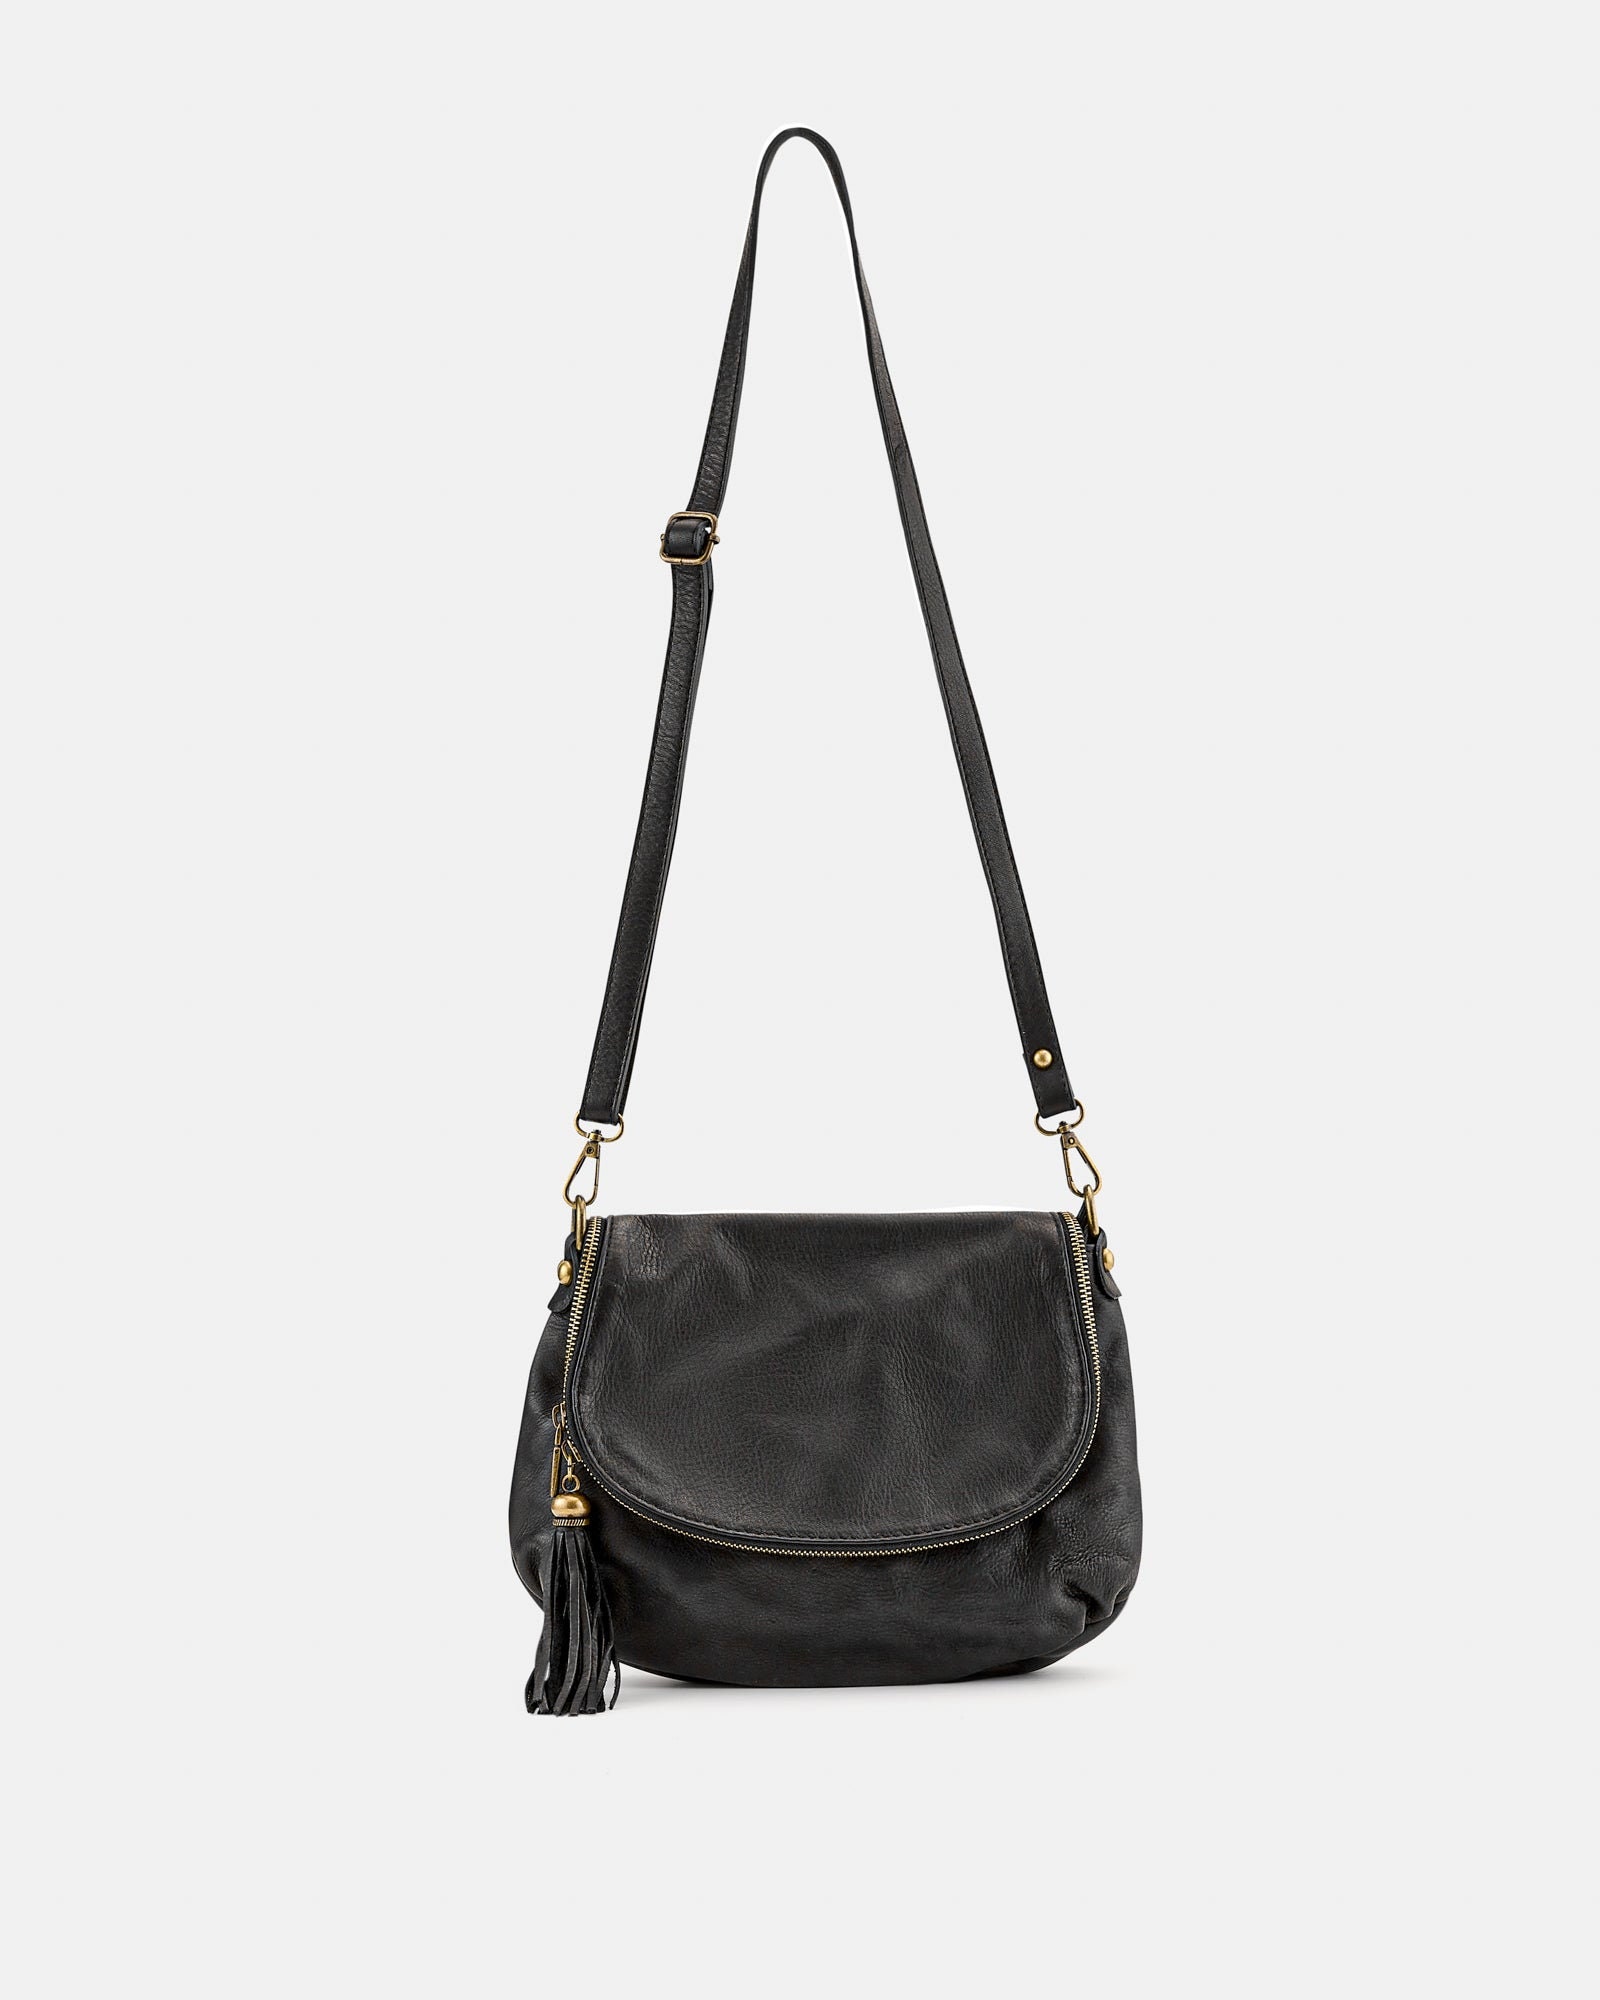 Vasarino Black Soft Leather Crossbody Bag - Etsy